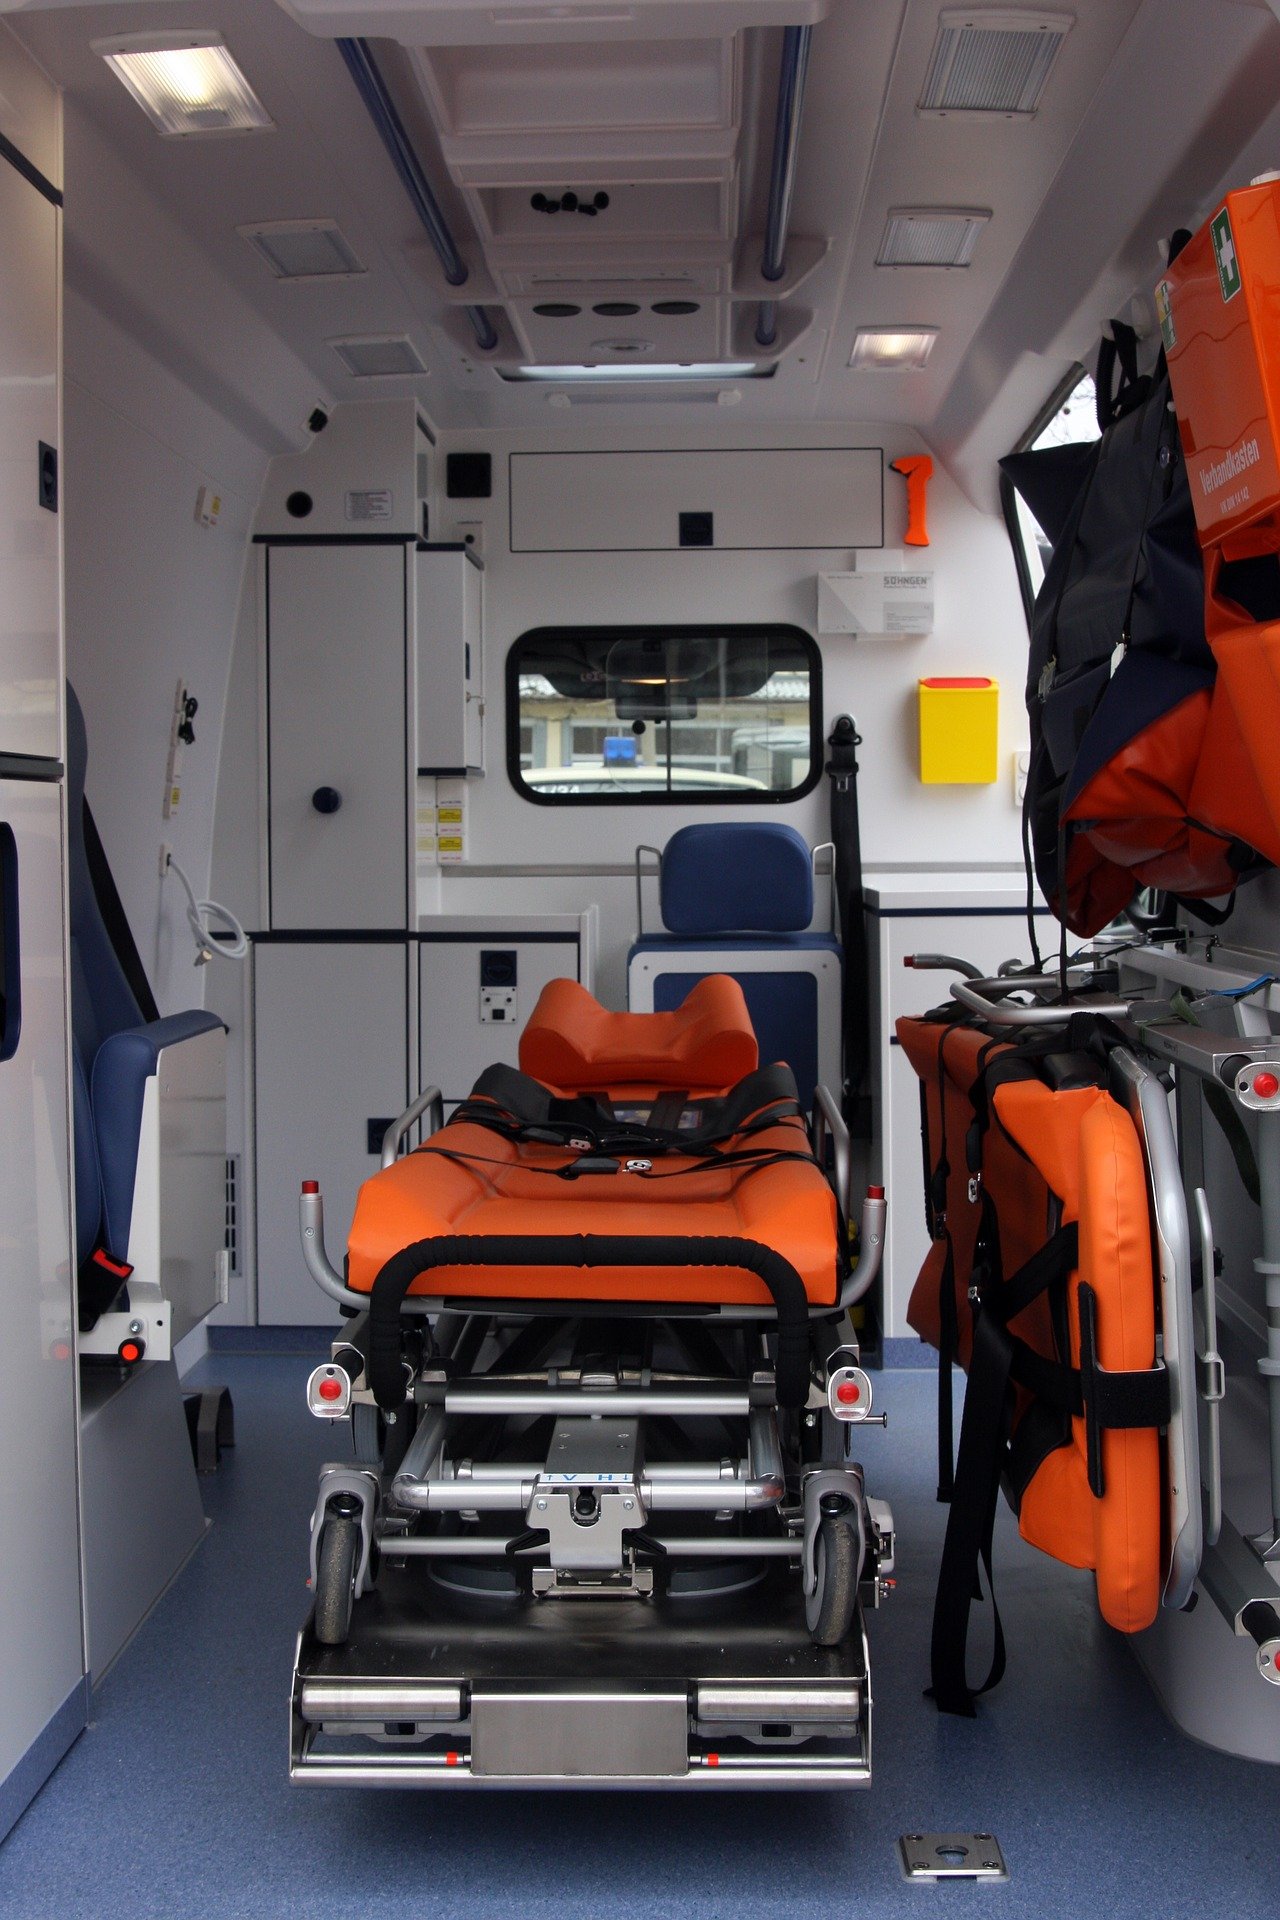 L'intérieur d'une ambulance. | Photo : Pixabay